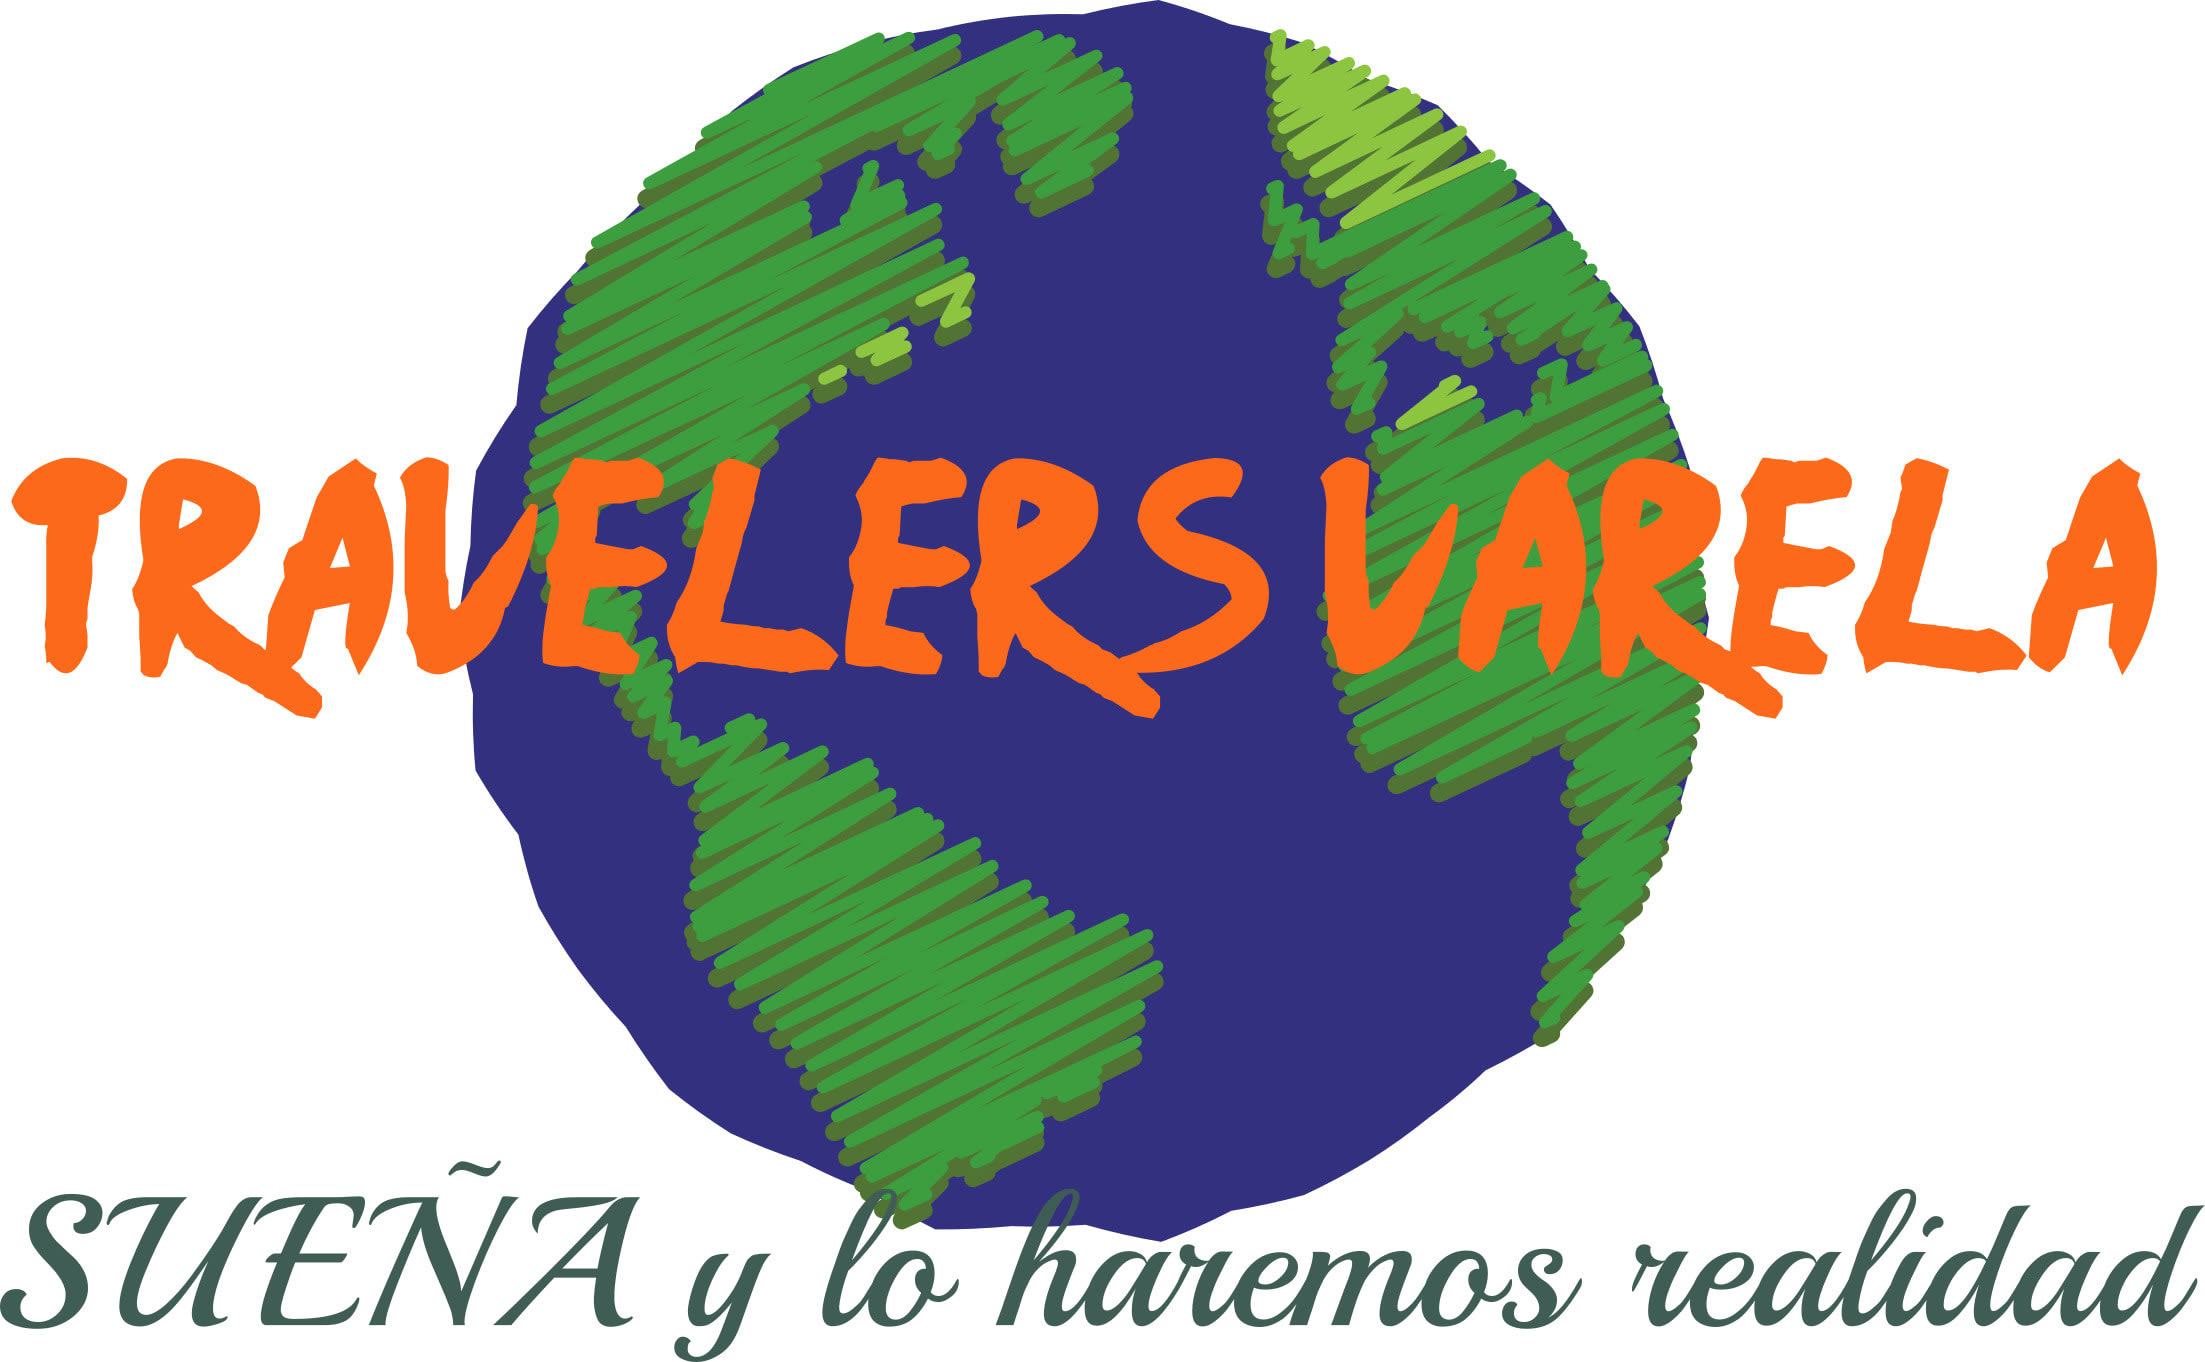 Travelers Varela